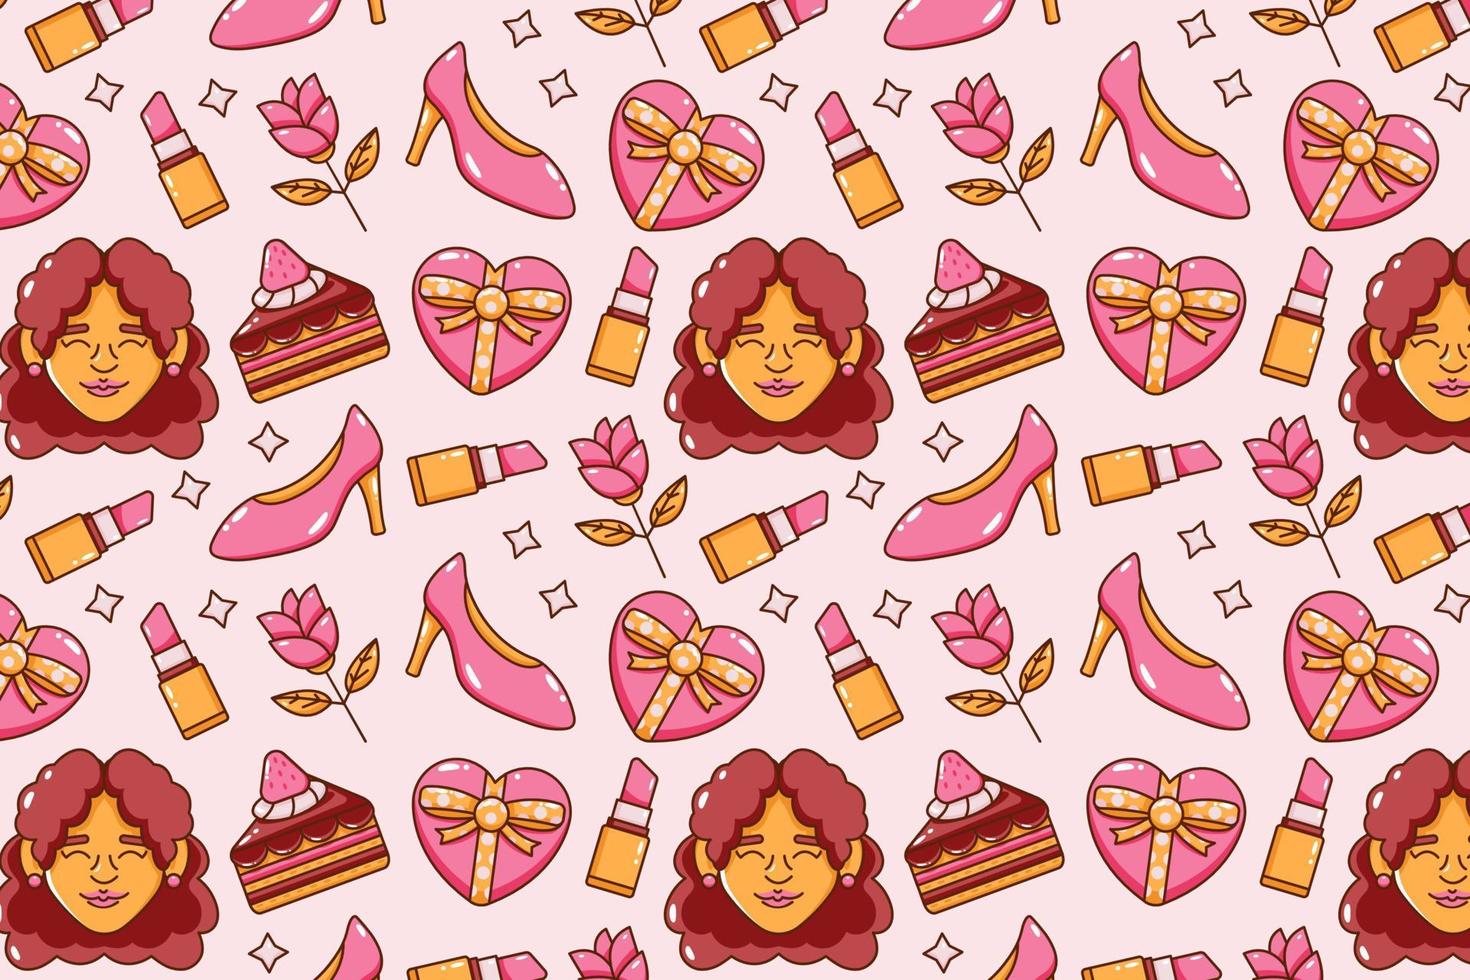 dia de la mujer. caras, pasteles, bebidas, pintalabios, tacones altos, regalos y flores iconos de patrones sin fisuras vector